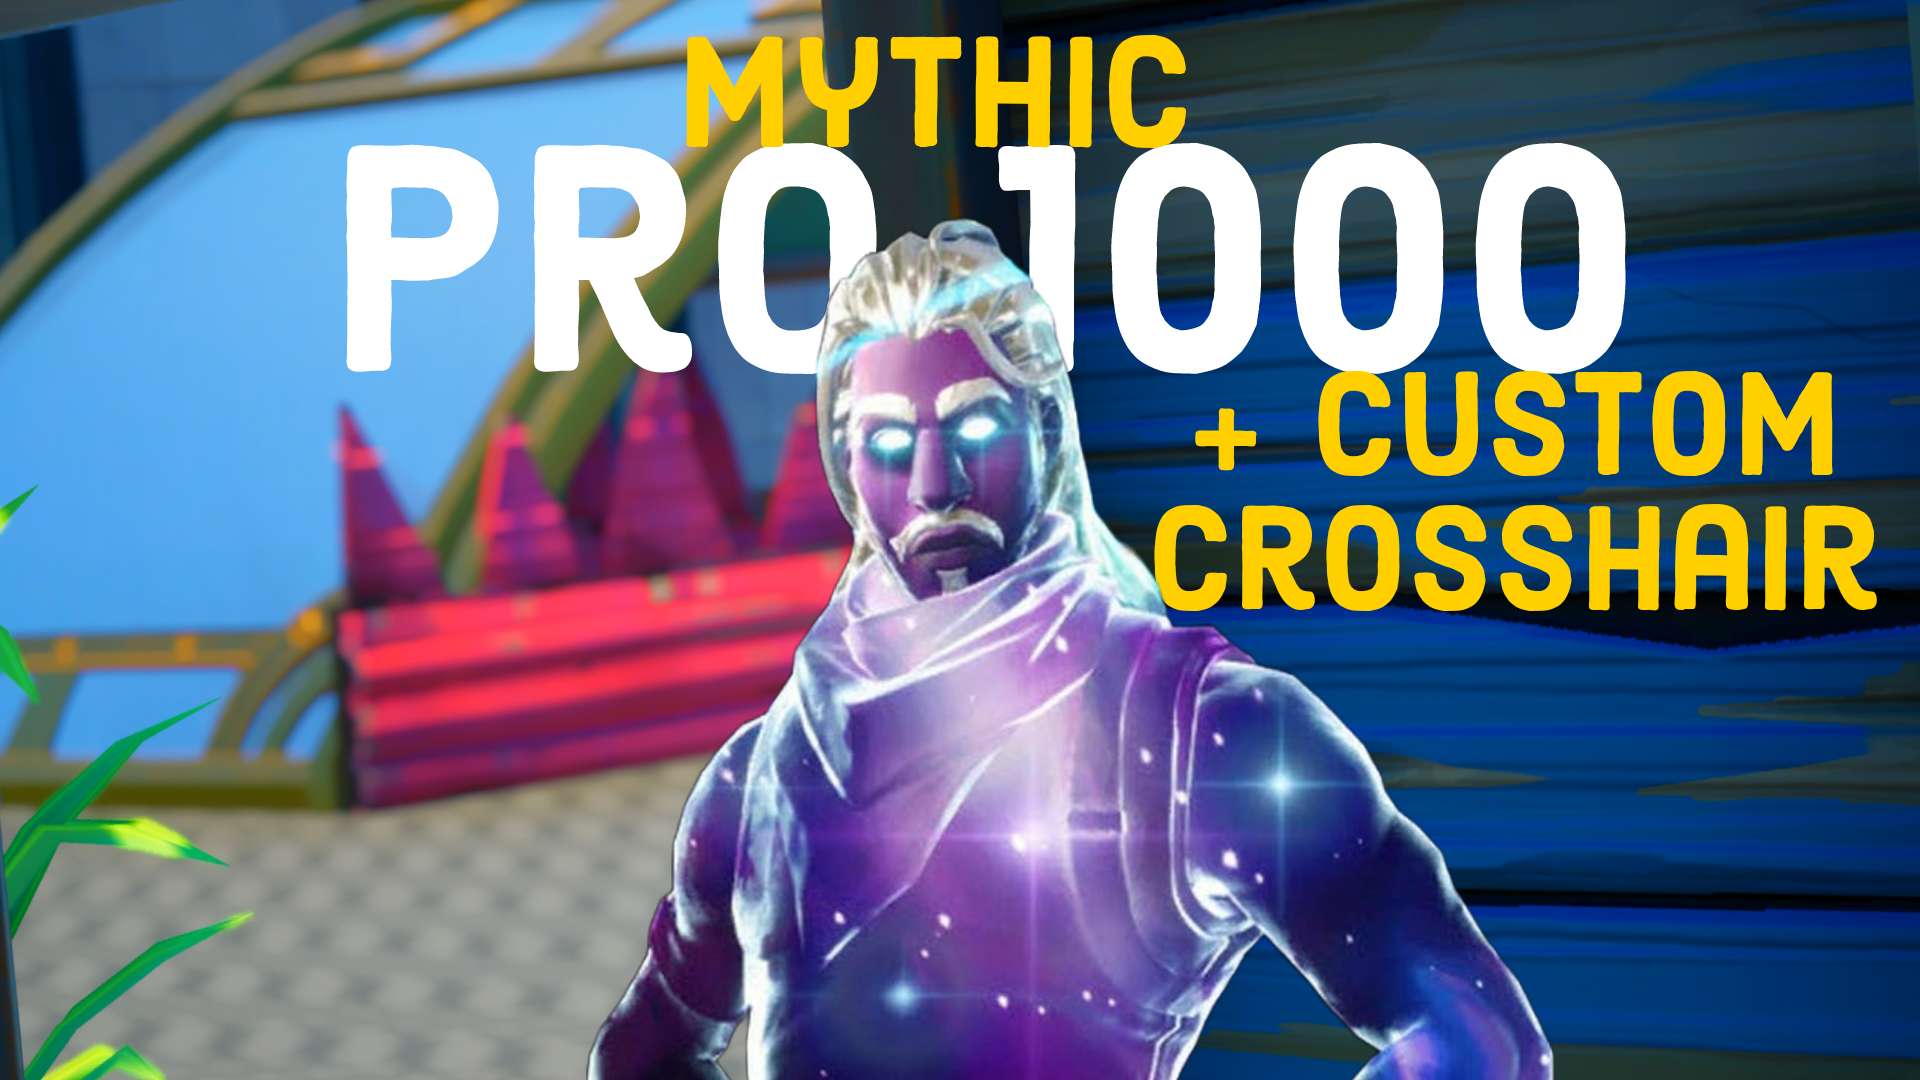 MYTHIC PRO 1000